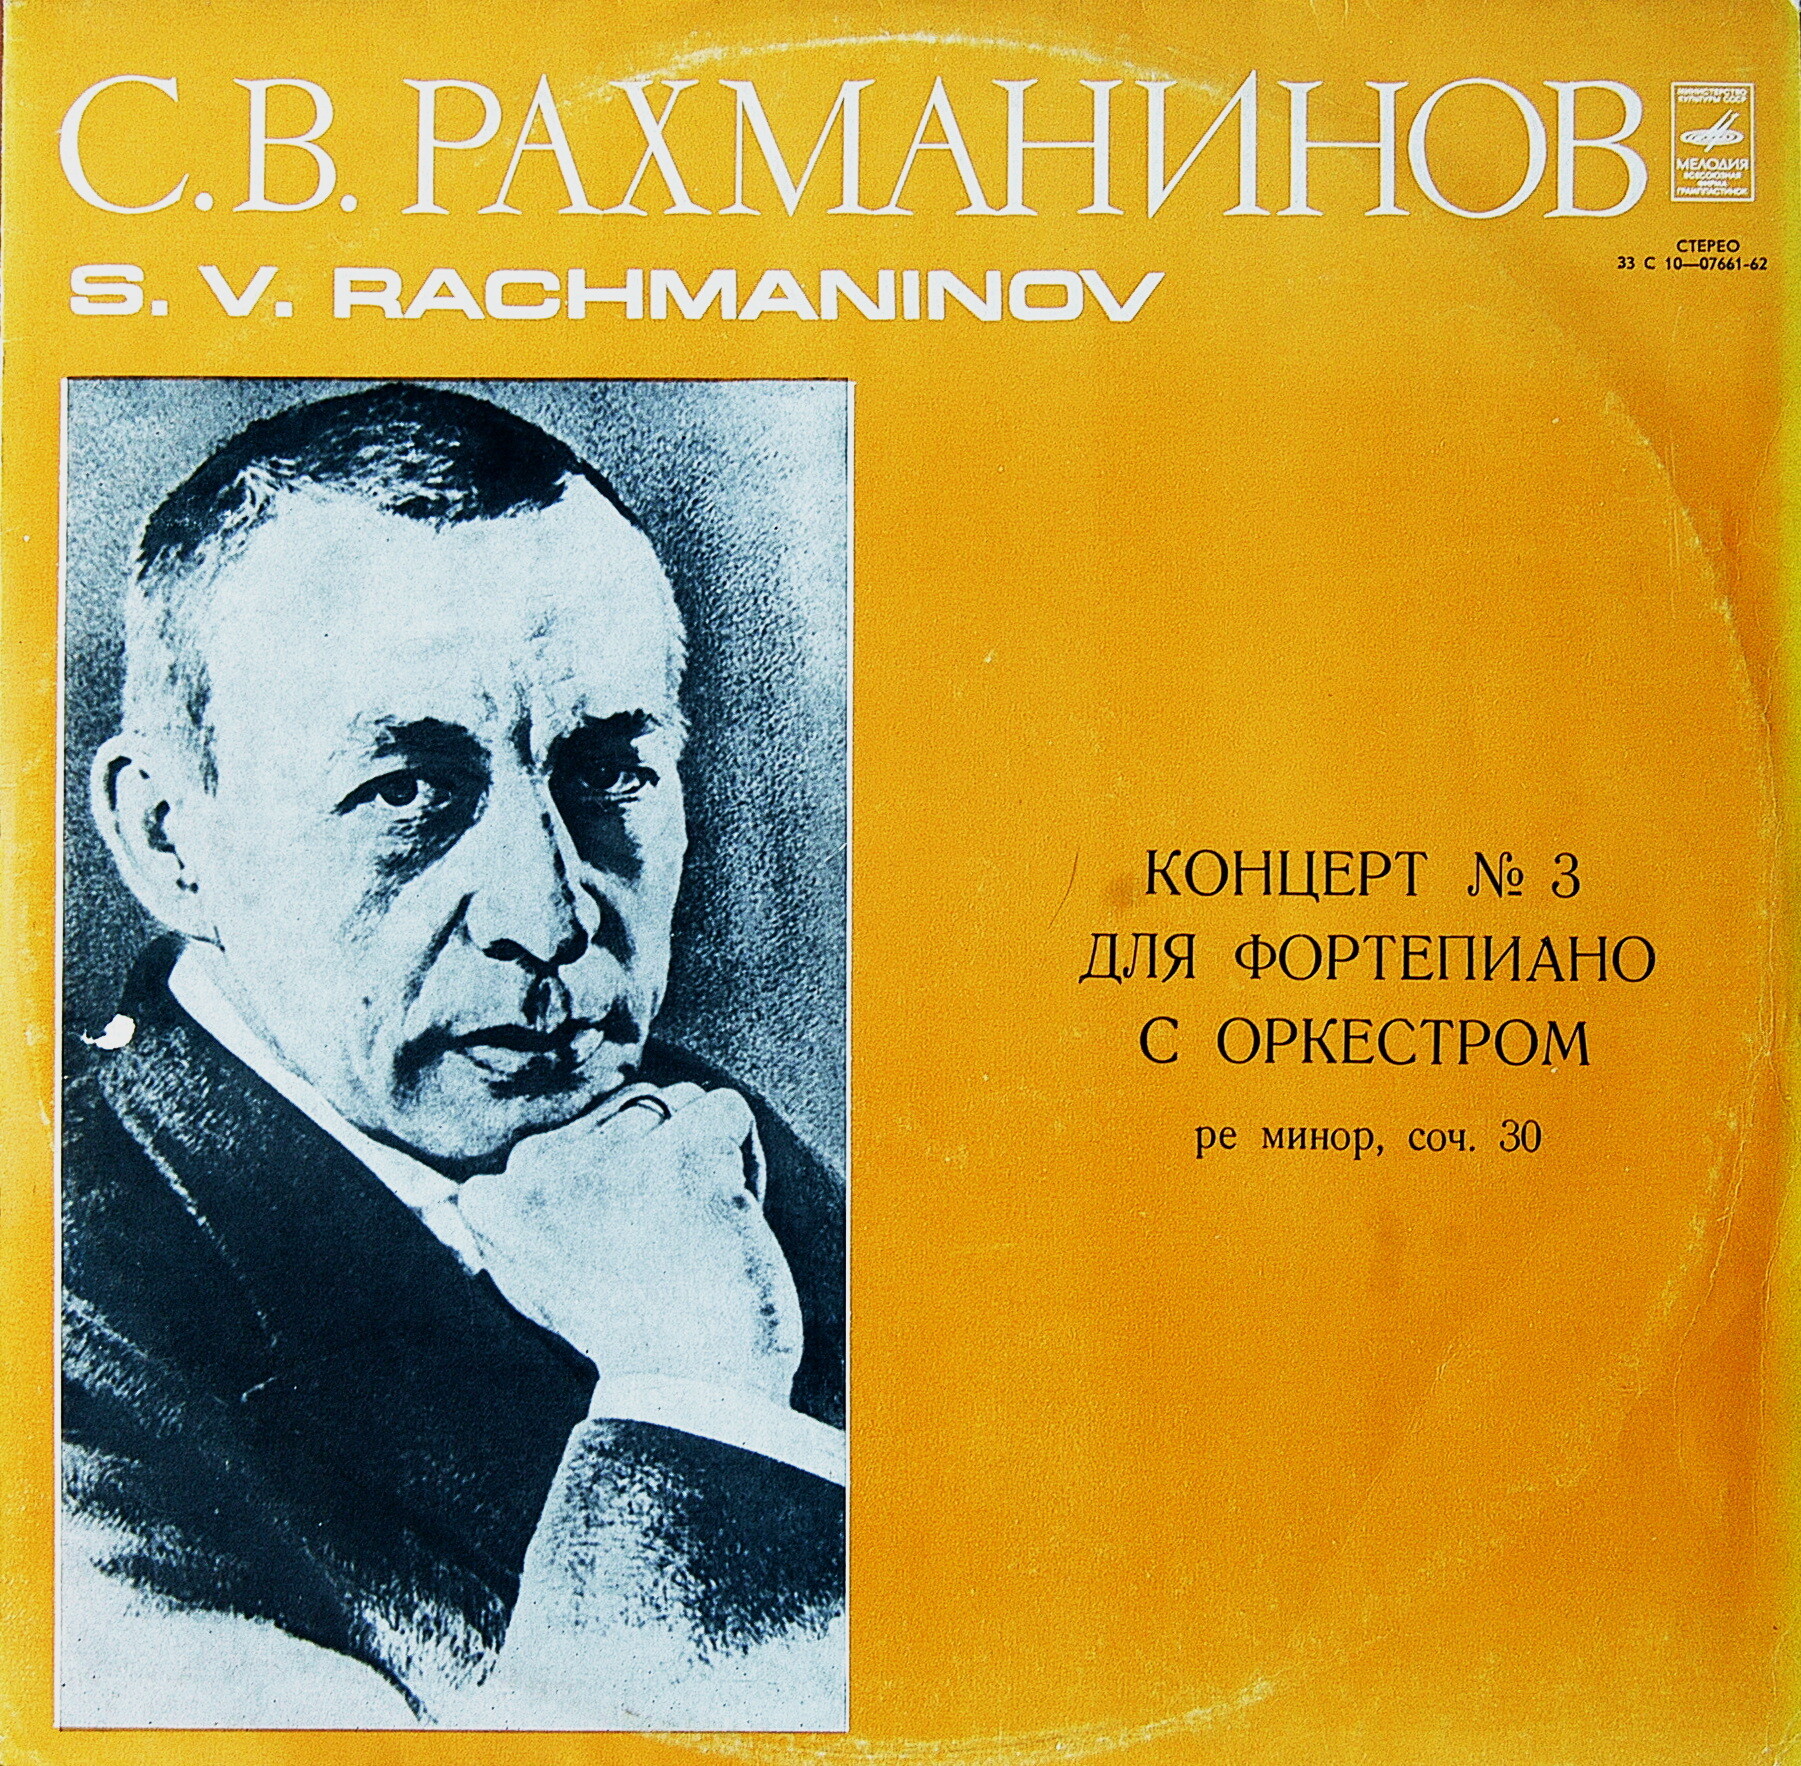 С.Рахманинов - Концерт №3 для ф-но с оркстром, А.Гаврилов (ф-но), дир. А.Лазарев